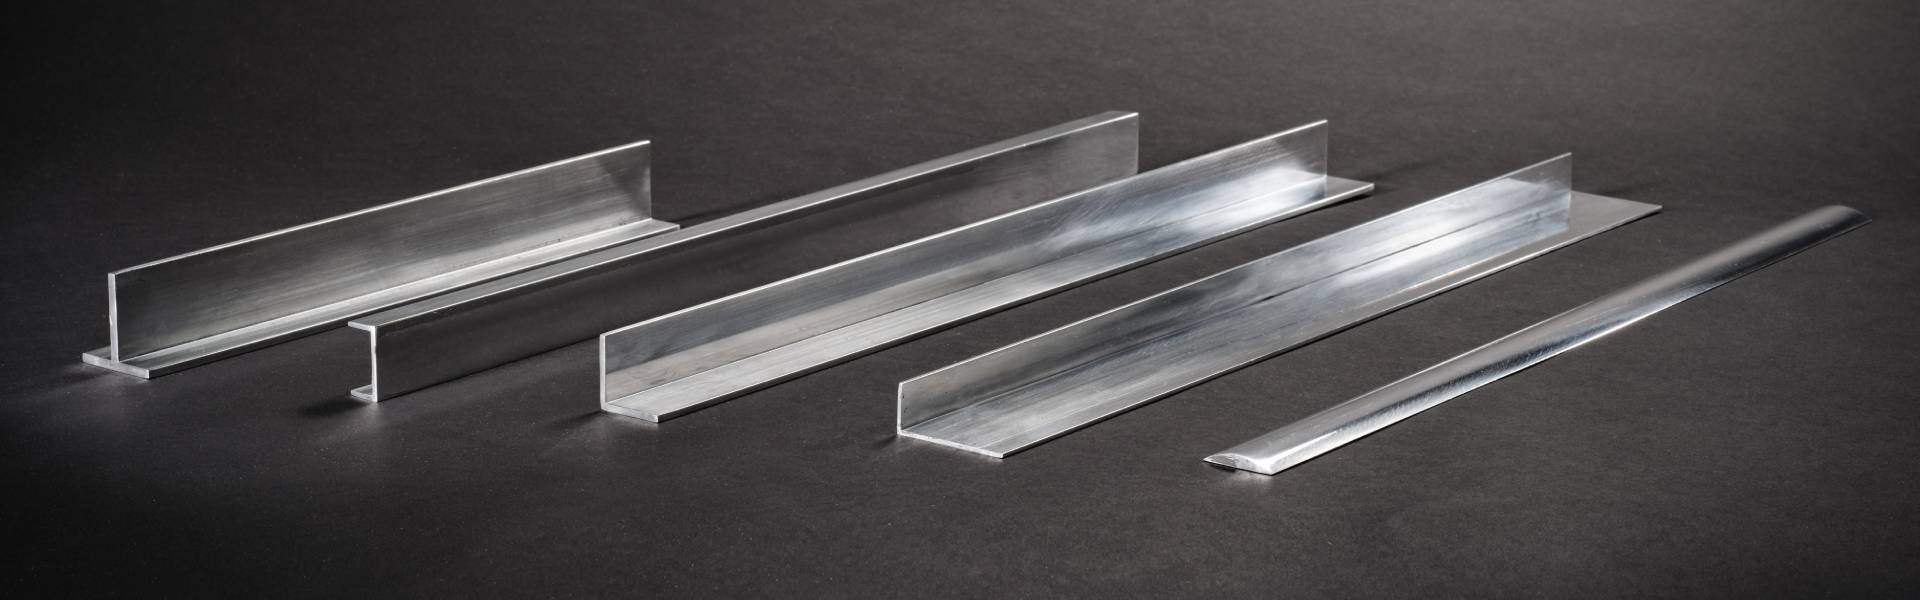 Profili - Vendita alluminio: profili, tubi, lastre e barre alluminio.